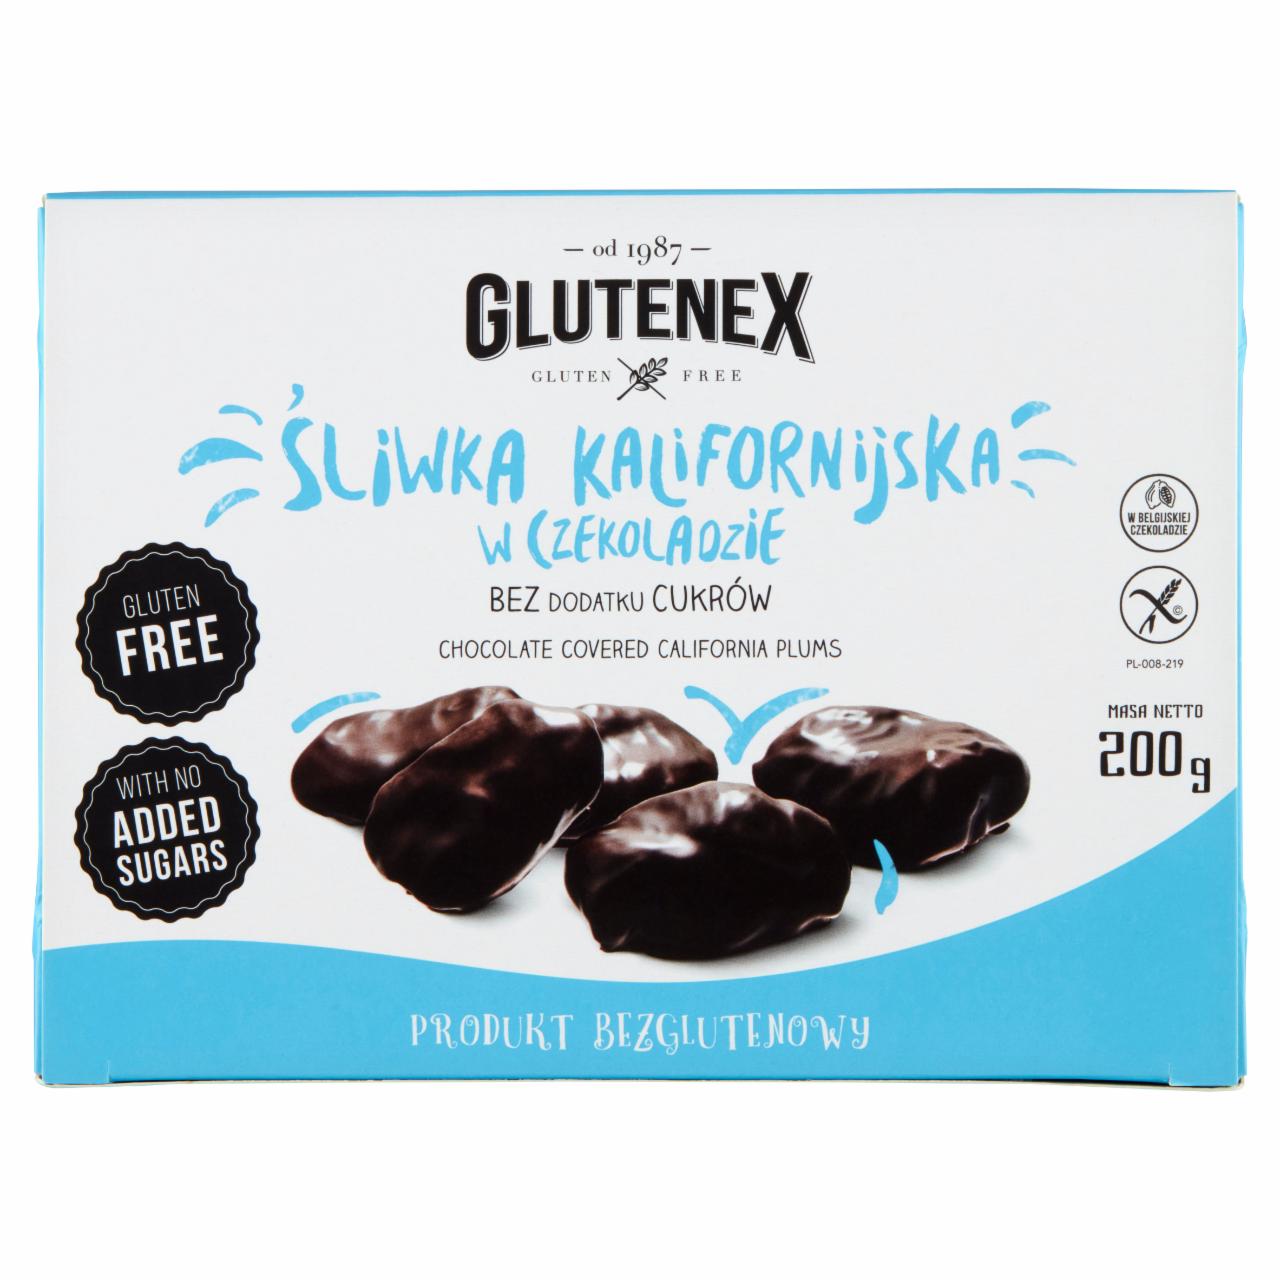 Zdjęcia - Glutenex Śliwka kalifornijska w czekoladzie 200 g